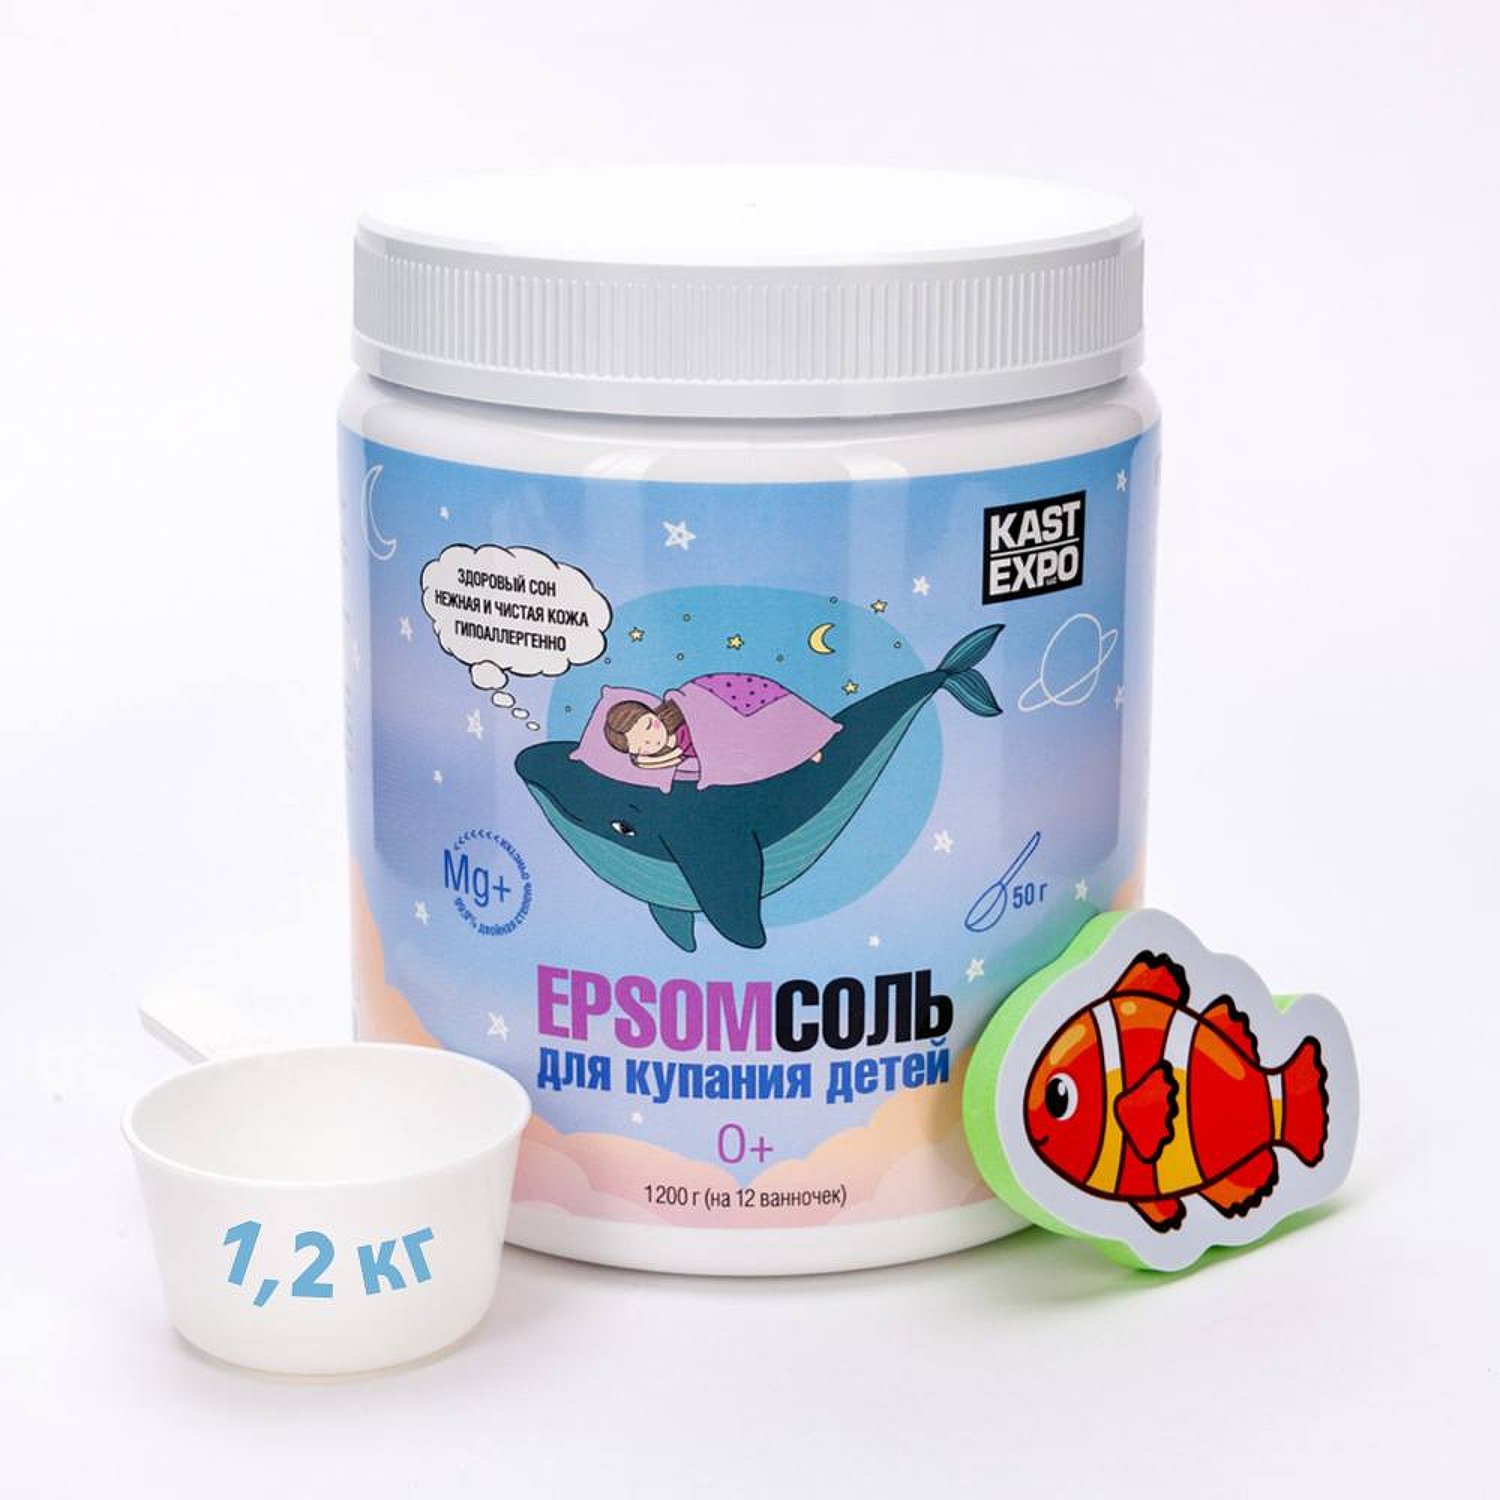 Соль для ванн KAST-EXPO магниевая детская Epsom - фото 1